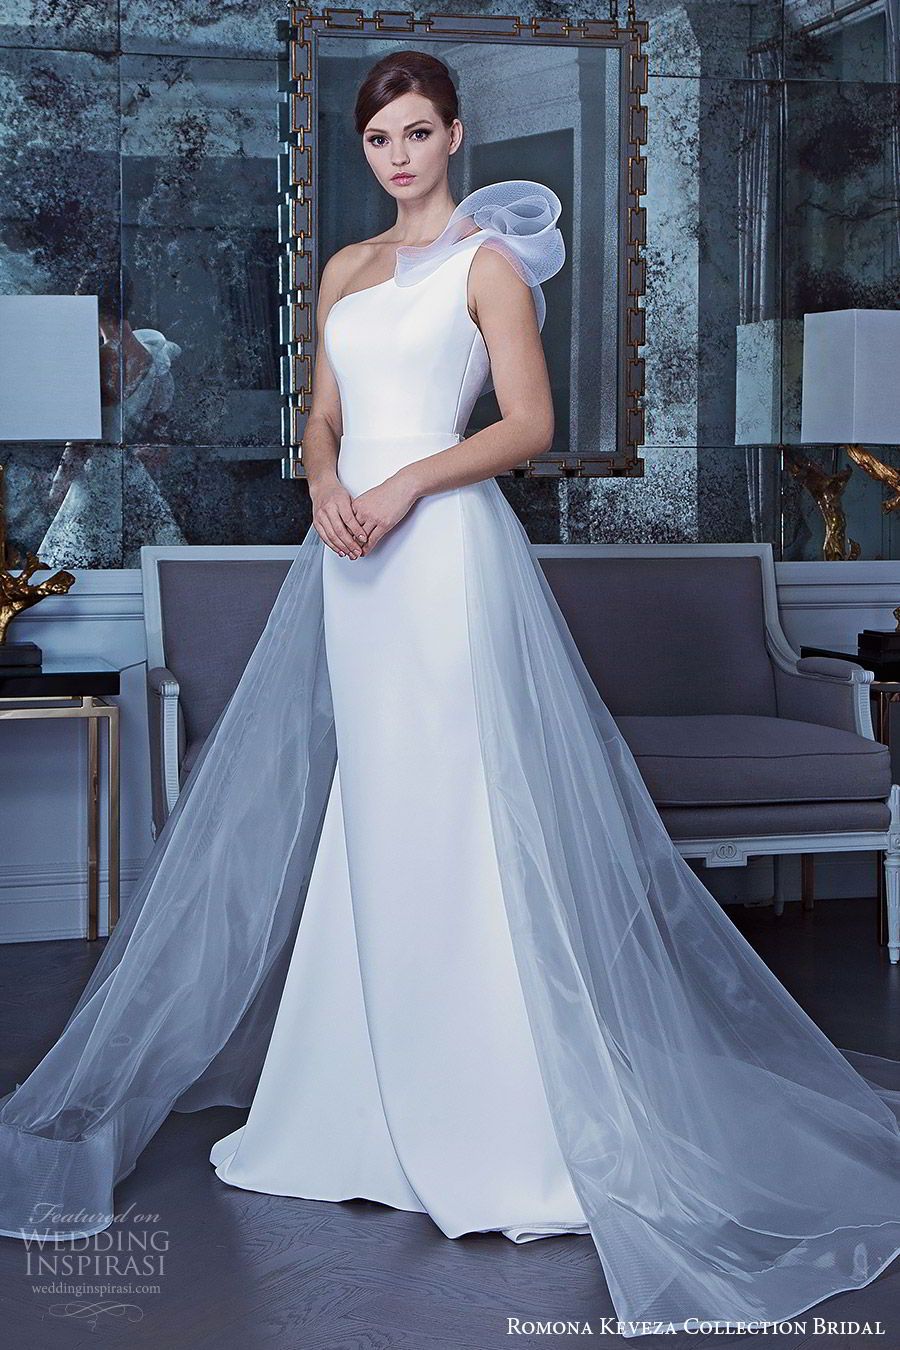 unique one-shoulder wedding dresses